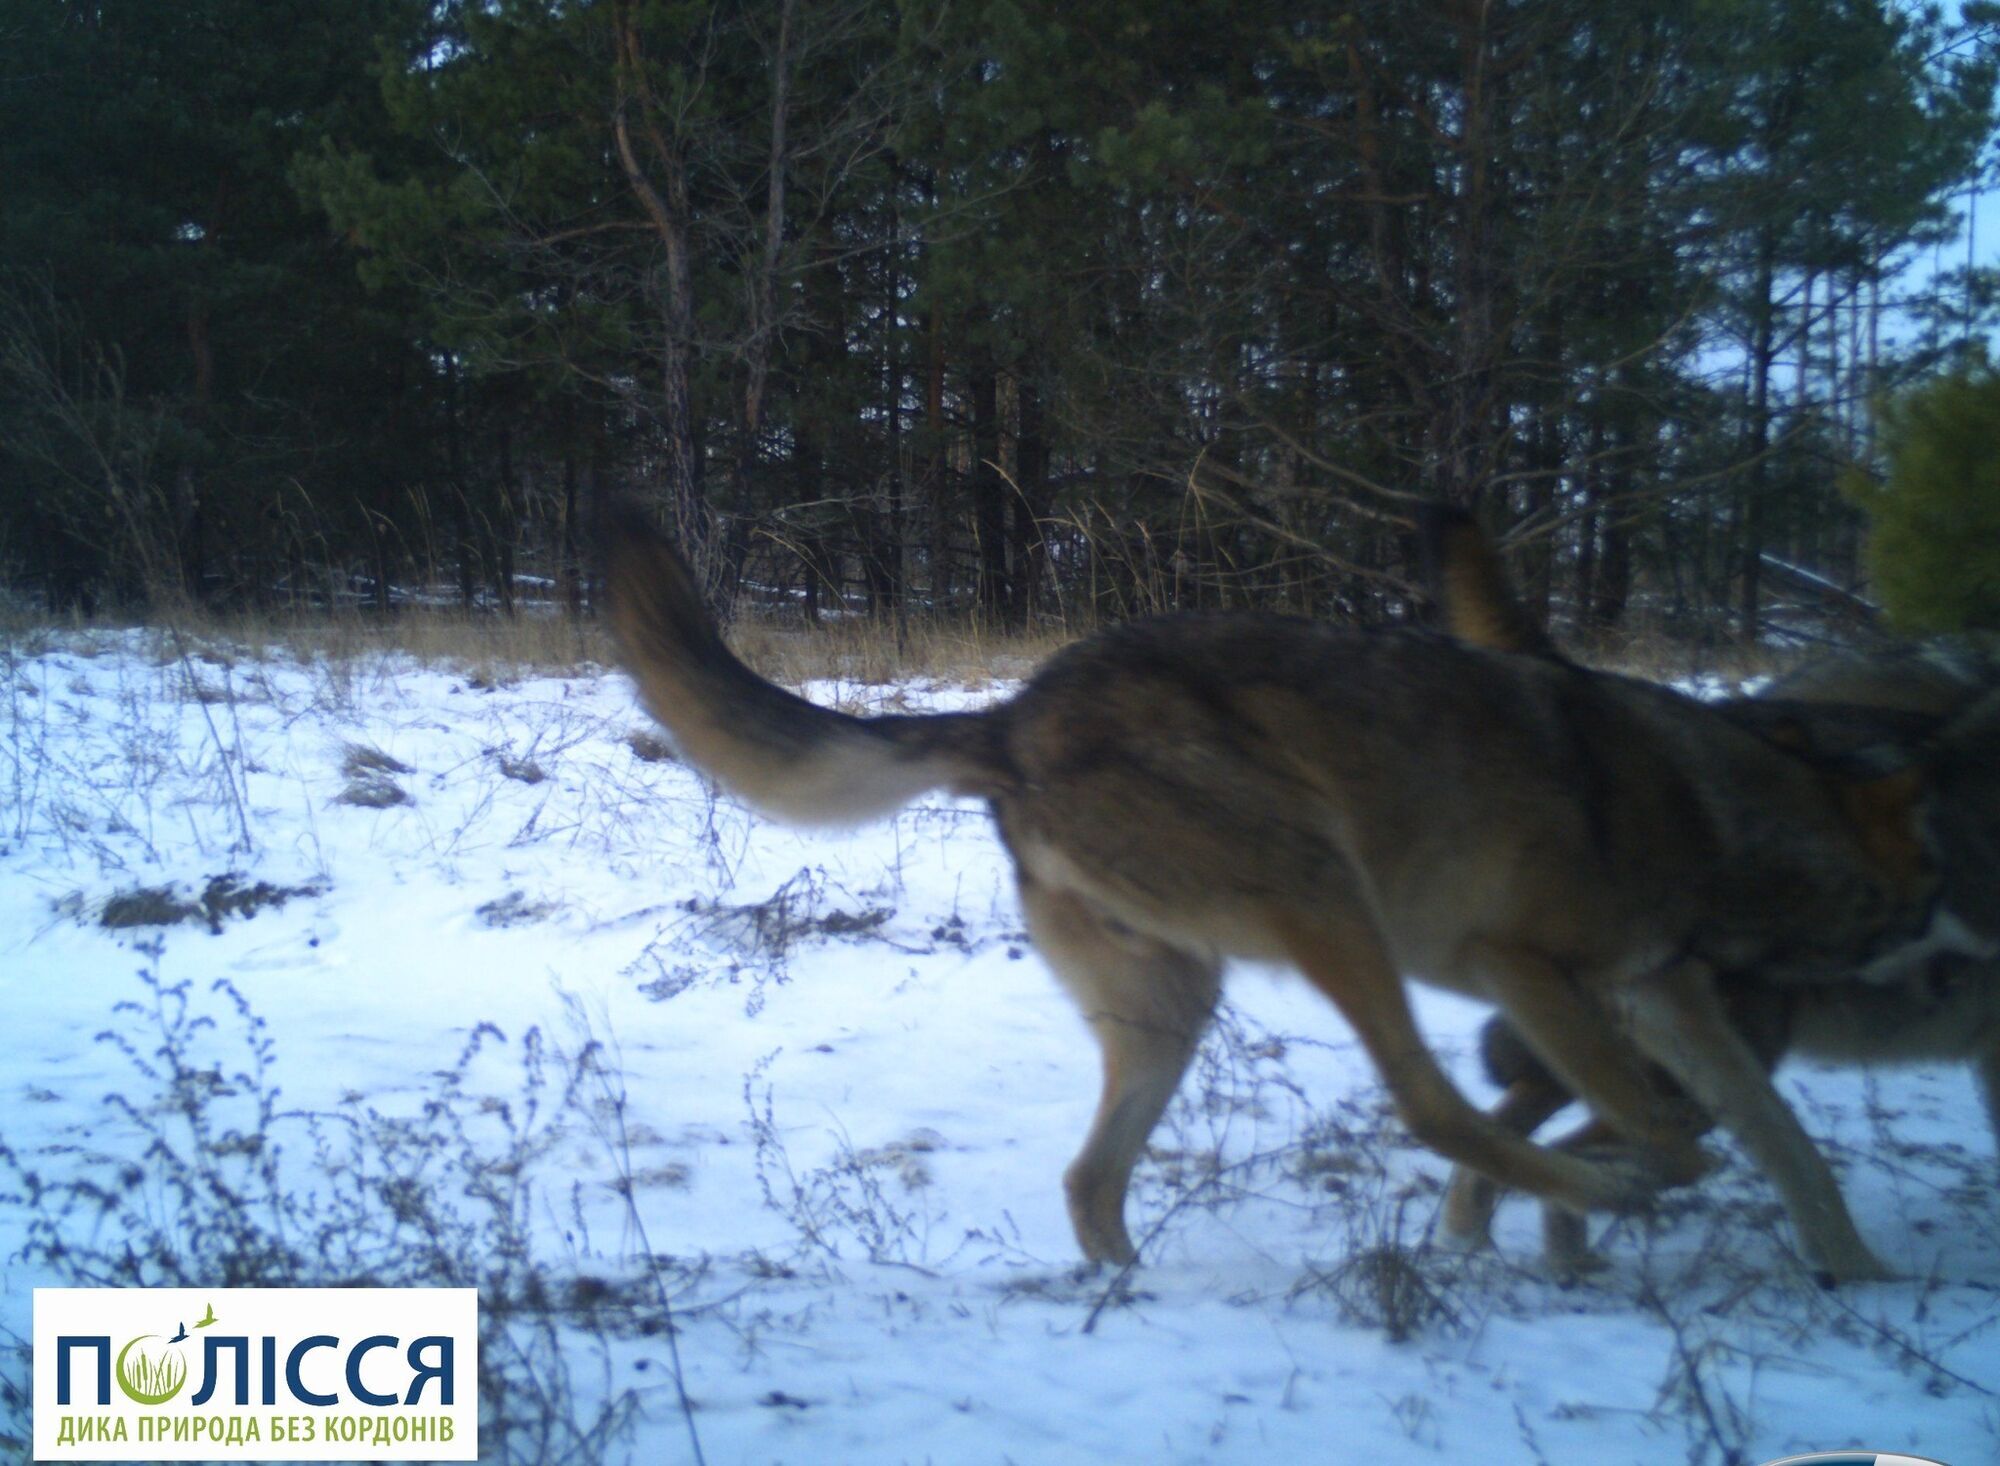 В Чернобыльской зоне фотоловушка зафиксировала драку двух хищников, за которыми тяжело наблюдать в дикой природе. Фото